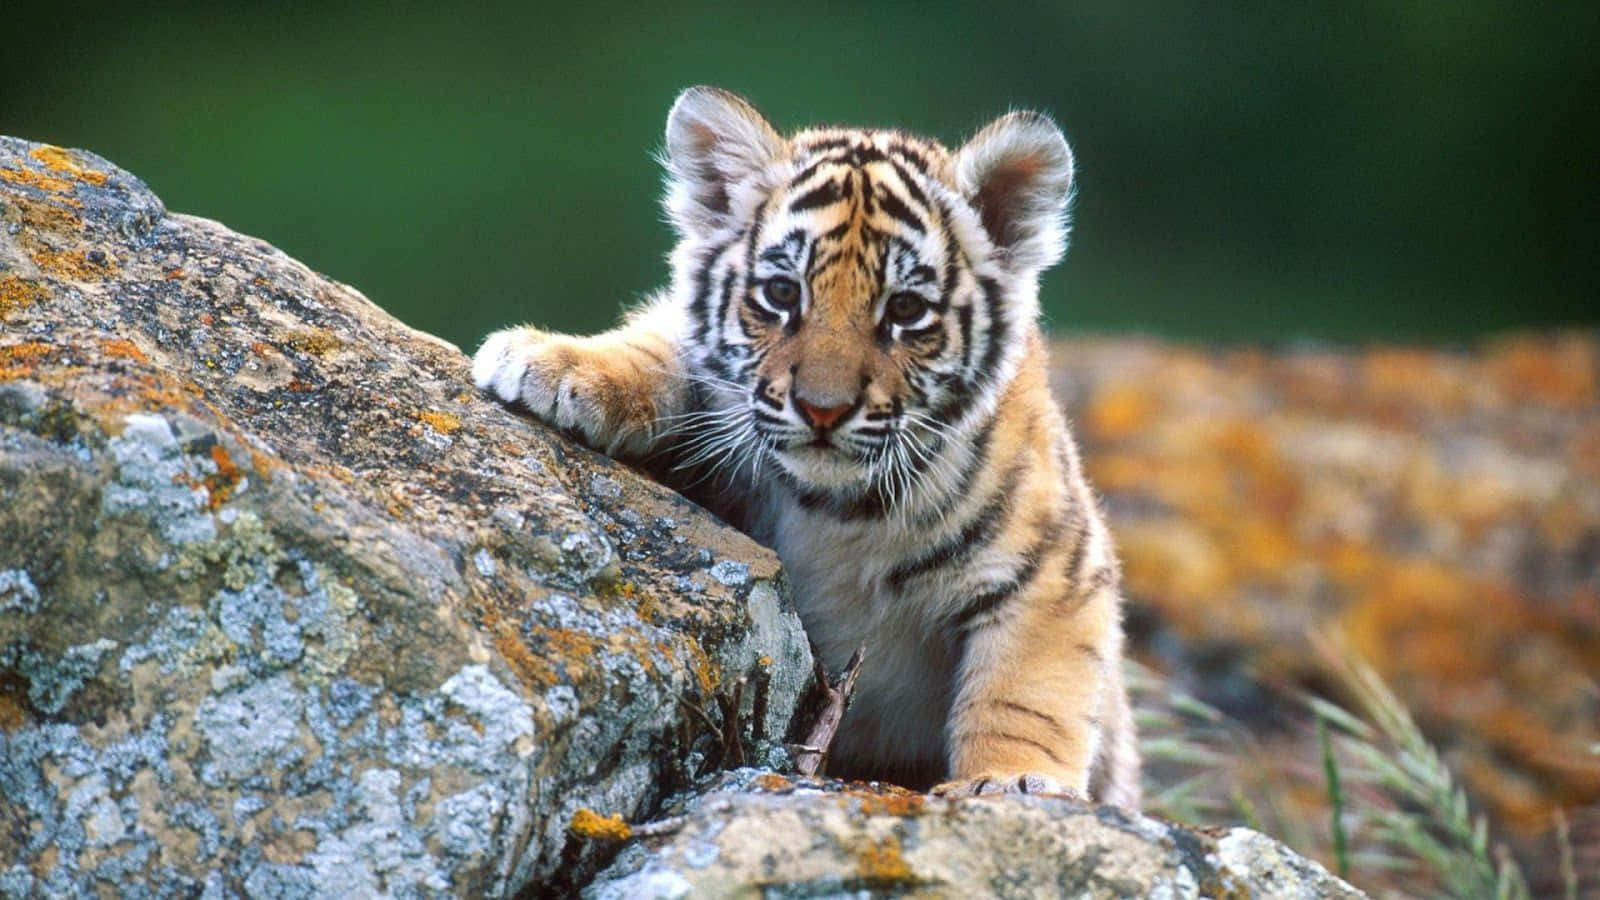 Uncachorro De Tigre Está Sentado En Una Roca